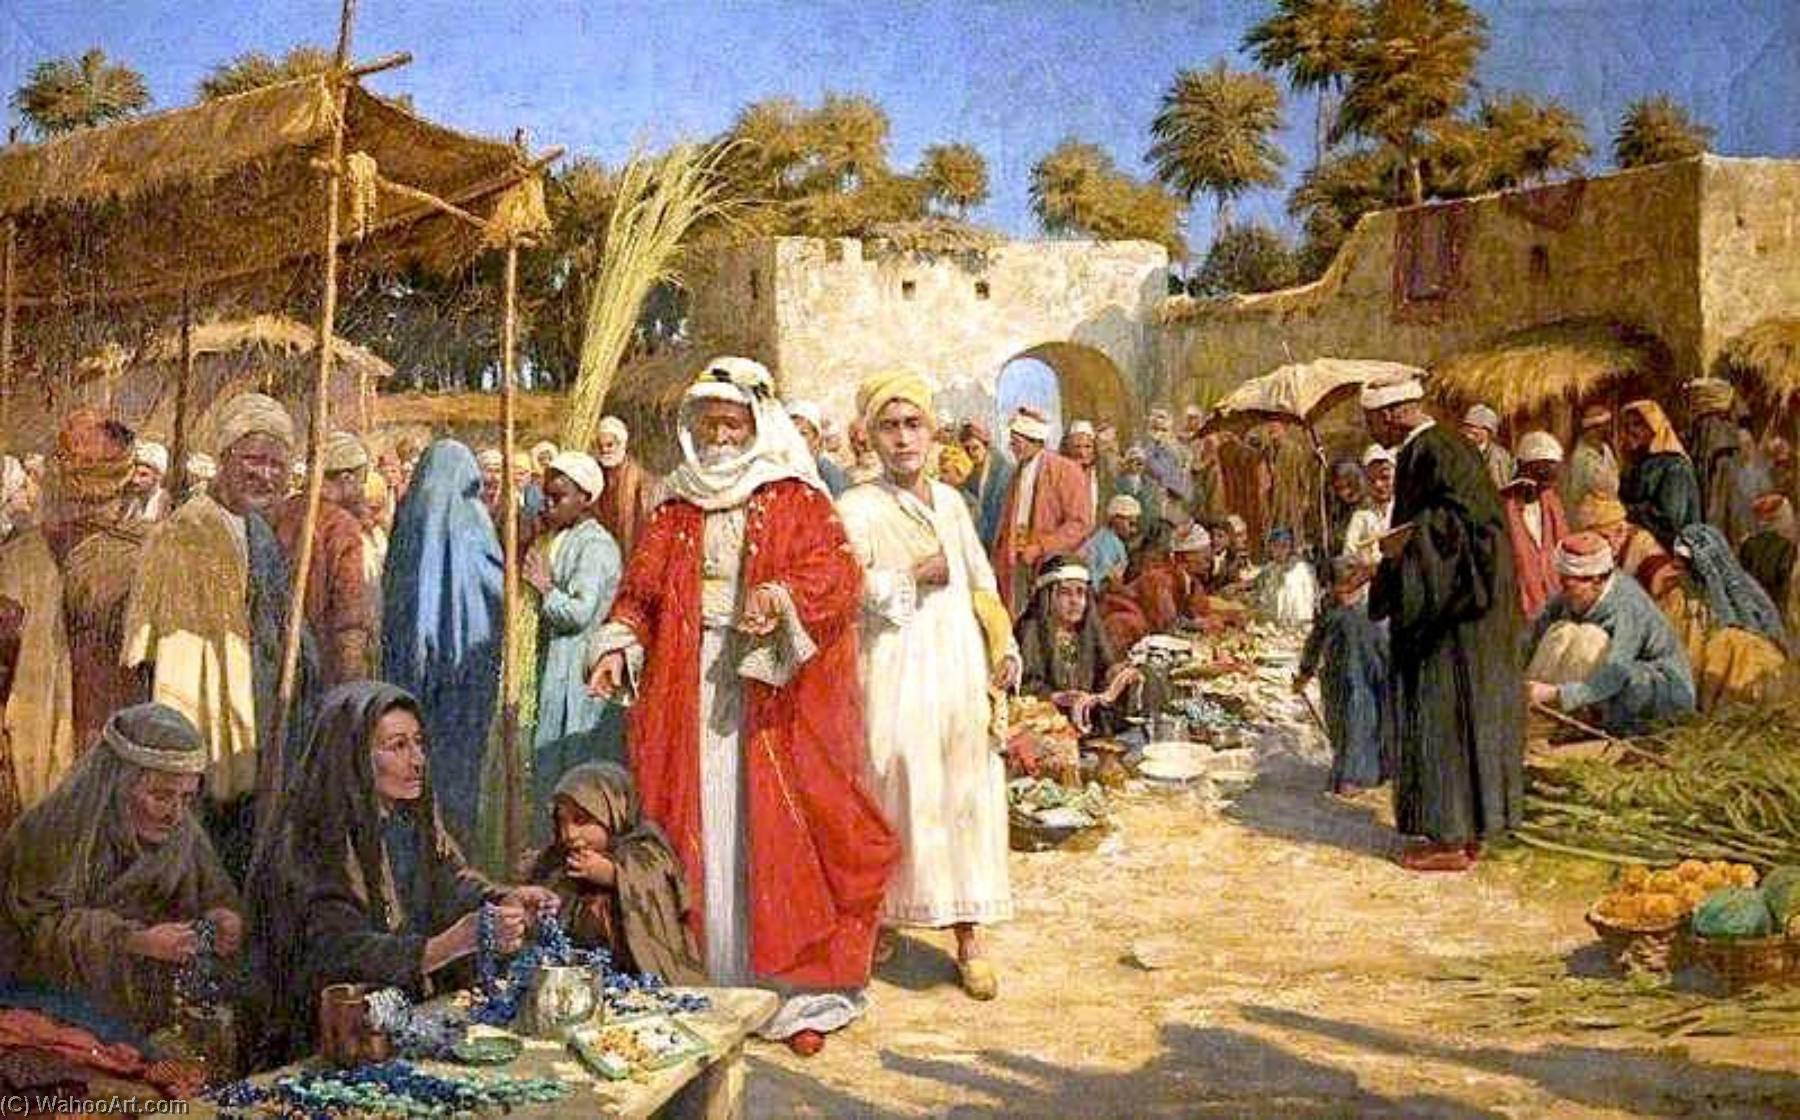 Мусульманский рынок. Percy Robert Craft картины. Древний Восточный базар. Торговцы в живописи. Средневековый Восточный базар.